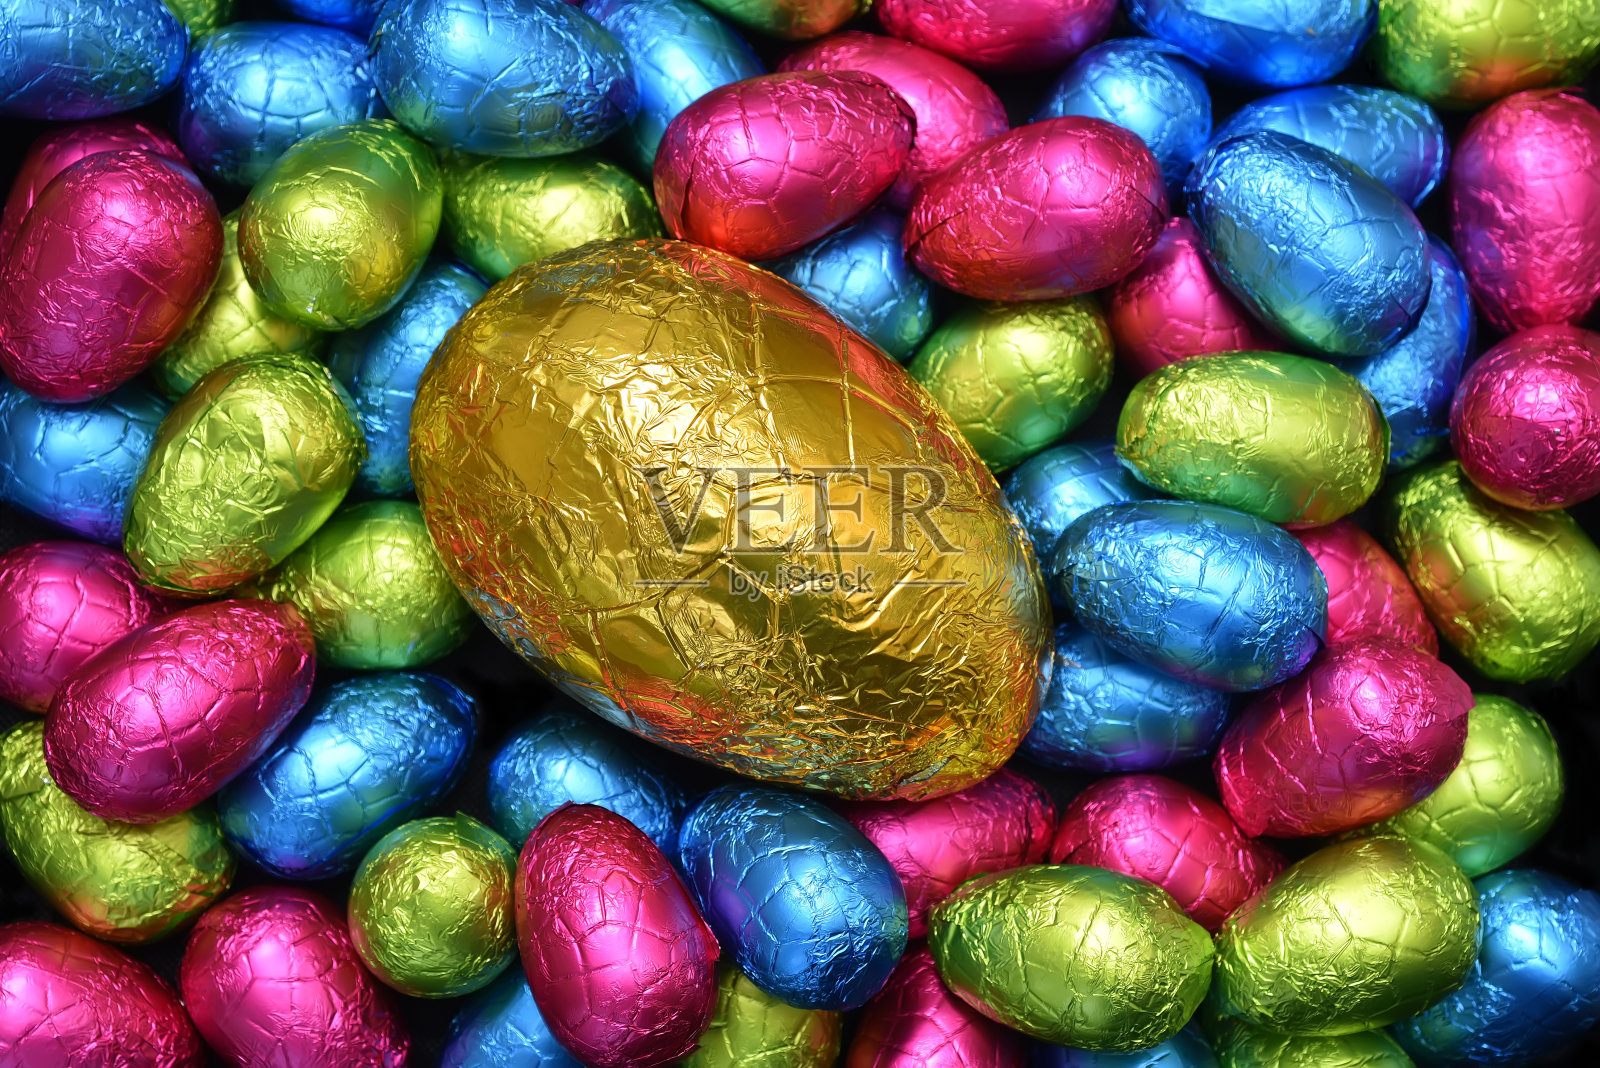 1 .用锡箔纸包裹一堆或一组颜色各异、大小不同的巧克力复活节彩蛋，彩蛋的颜色有粉色、蓝色、黄色和酸橙绿色，中间放一个大的金蛋。照片摄影图片